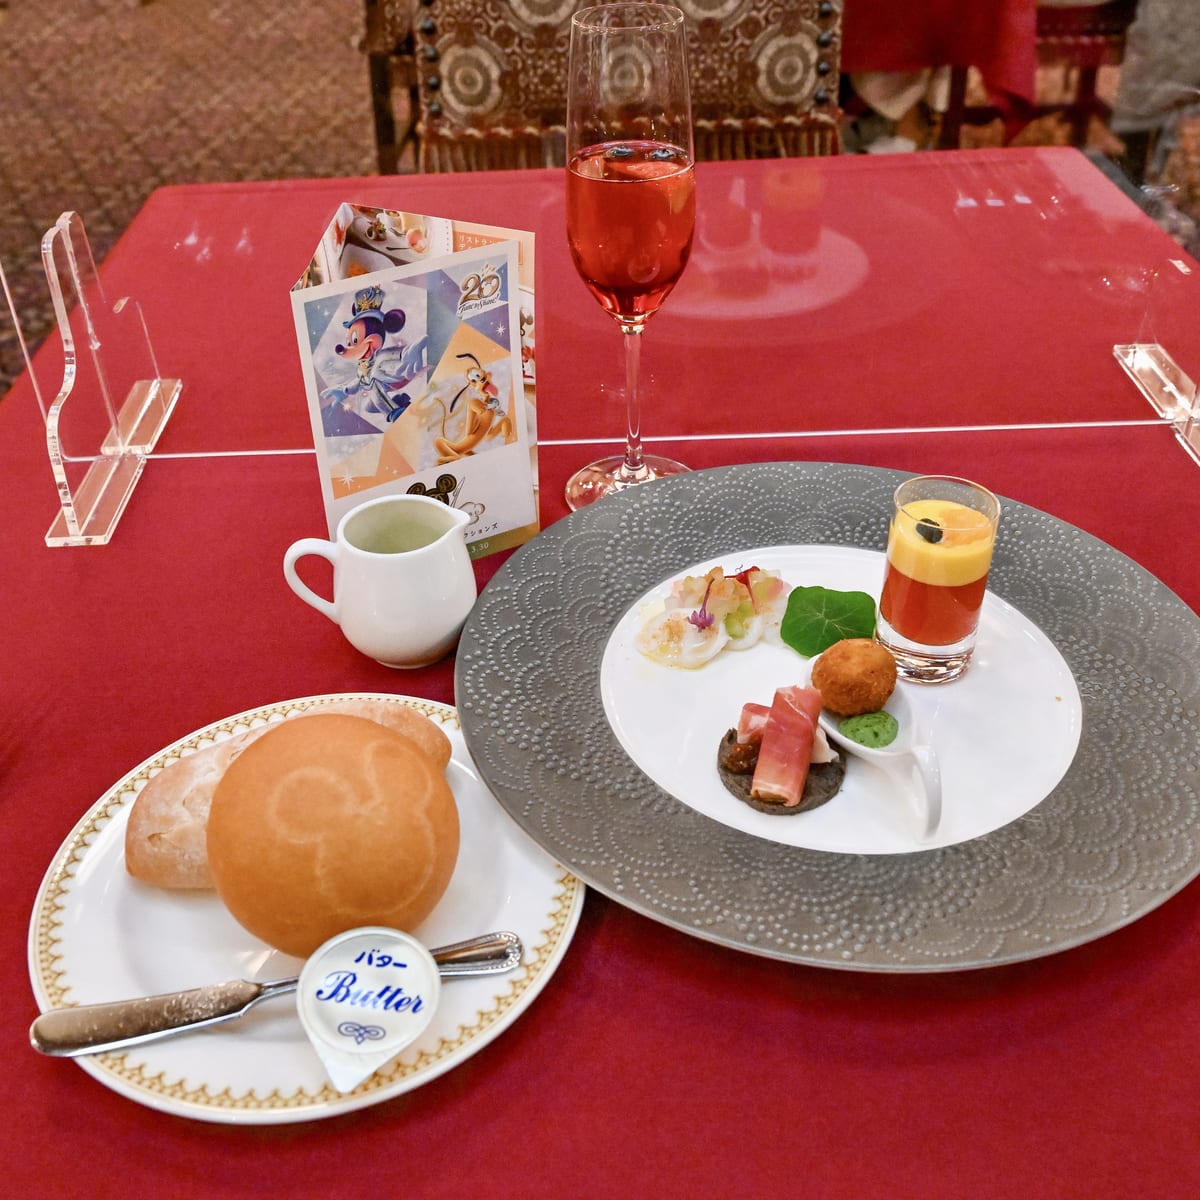 スペインとポルトガルの伝統料理をアレンジ マゼランズ 22早春 東京ディズニーシー周年スペシャルコース